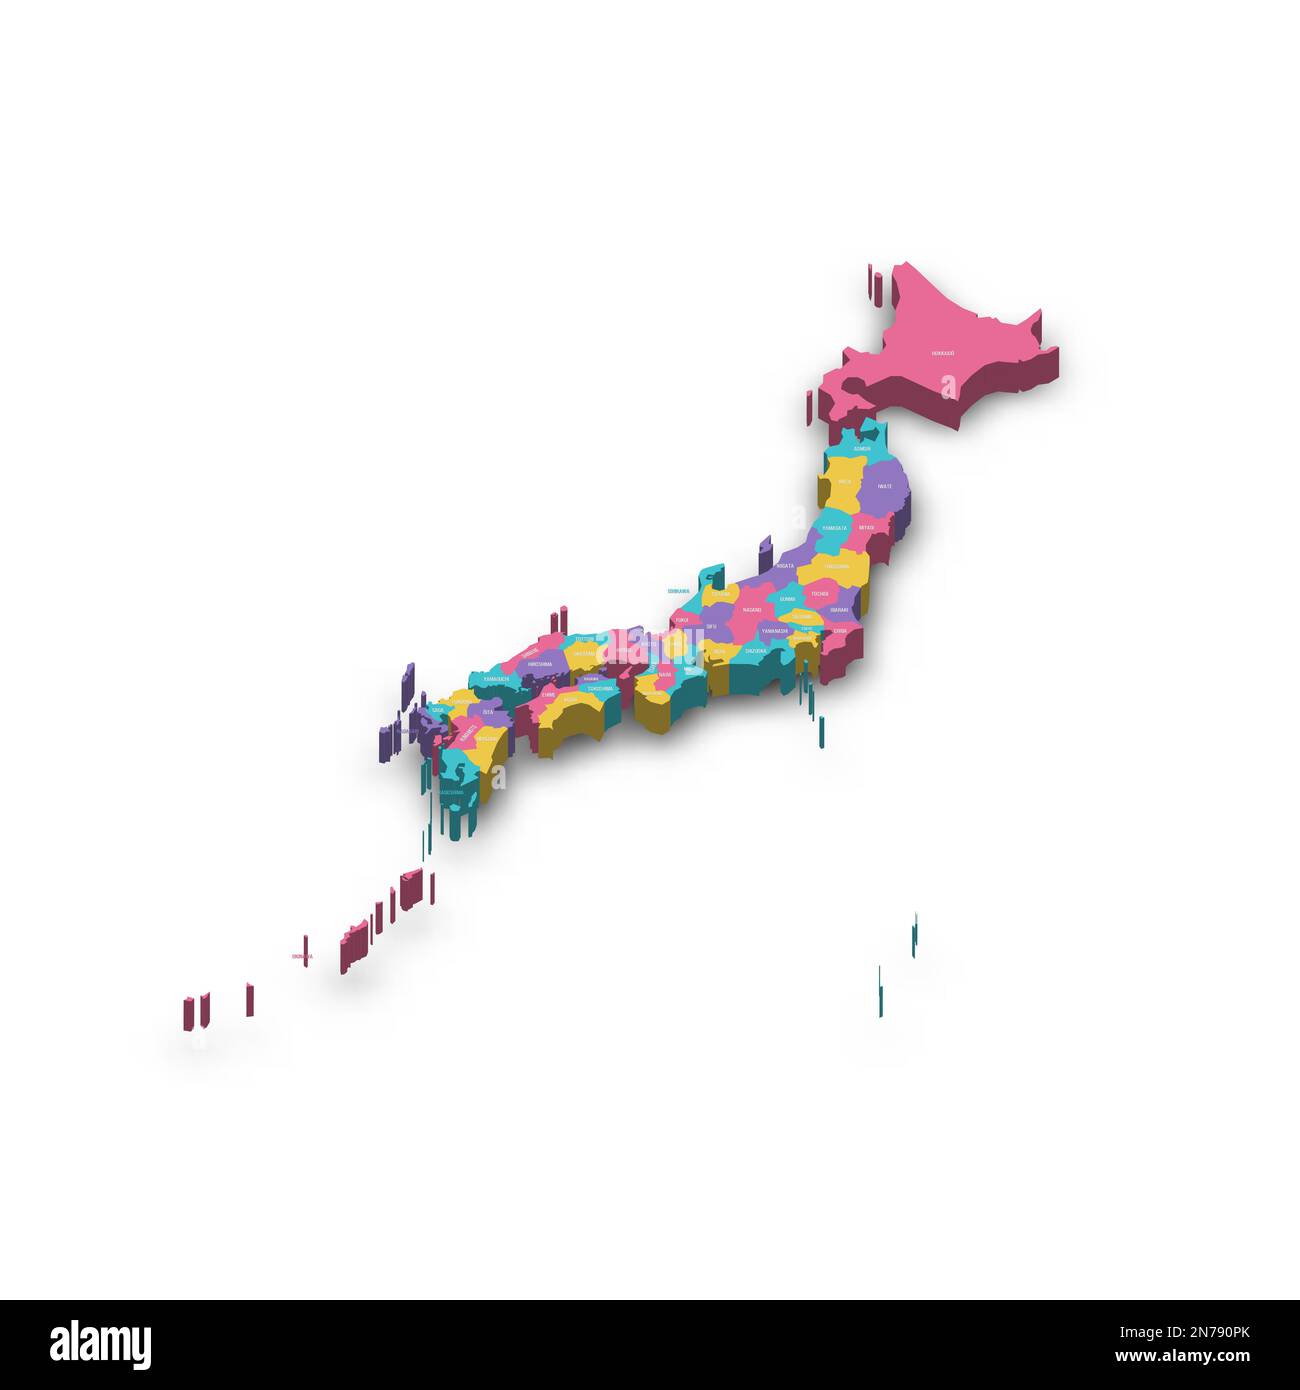 Politische Karte der Verwaltungseinheiten Japans - Präfekturen, Metropilis Tokio, Territorium Hokaido und städtische Präfekturen Kyoto und Osaka. Farbenfrohe 3D-Vektorkarte mit versenkten Schatten und Ländernamen. Stock Vektor